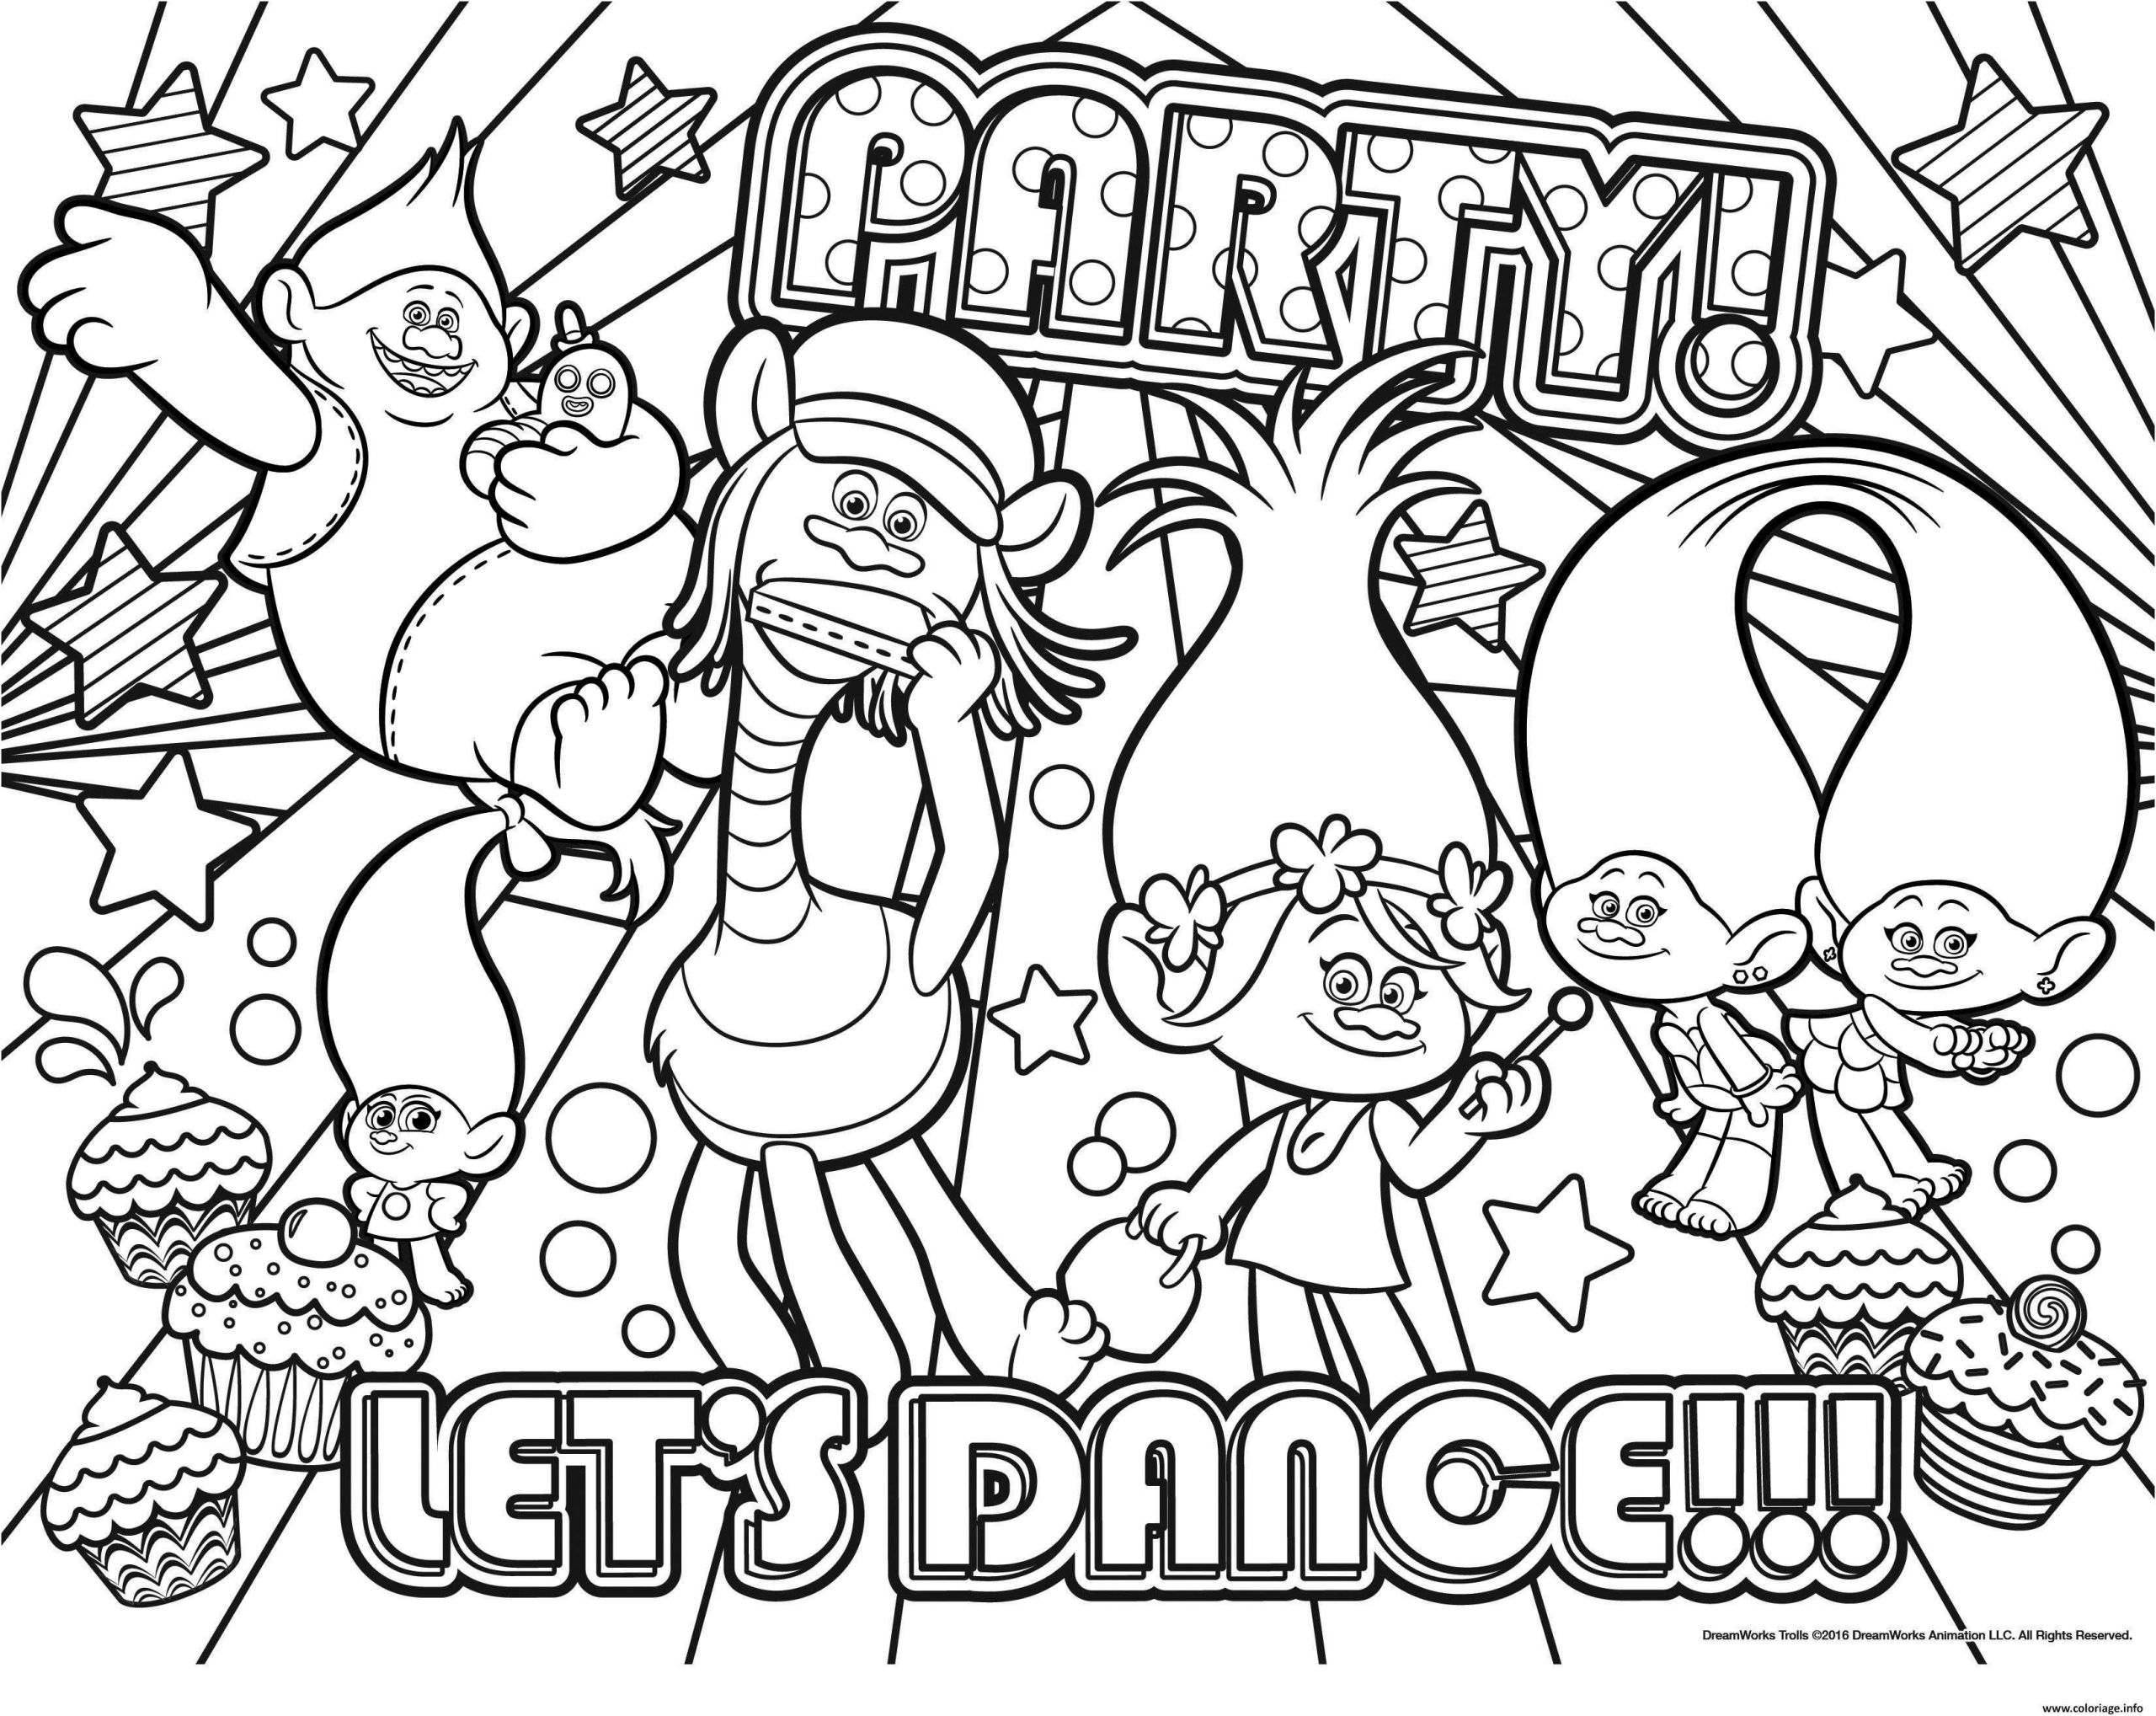 3112 coloriage party lets dance jecolorie 3776 dessin coloriage trolls